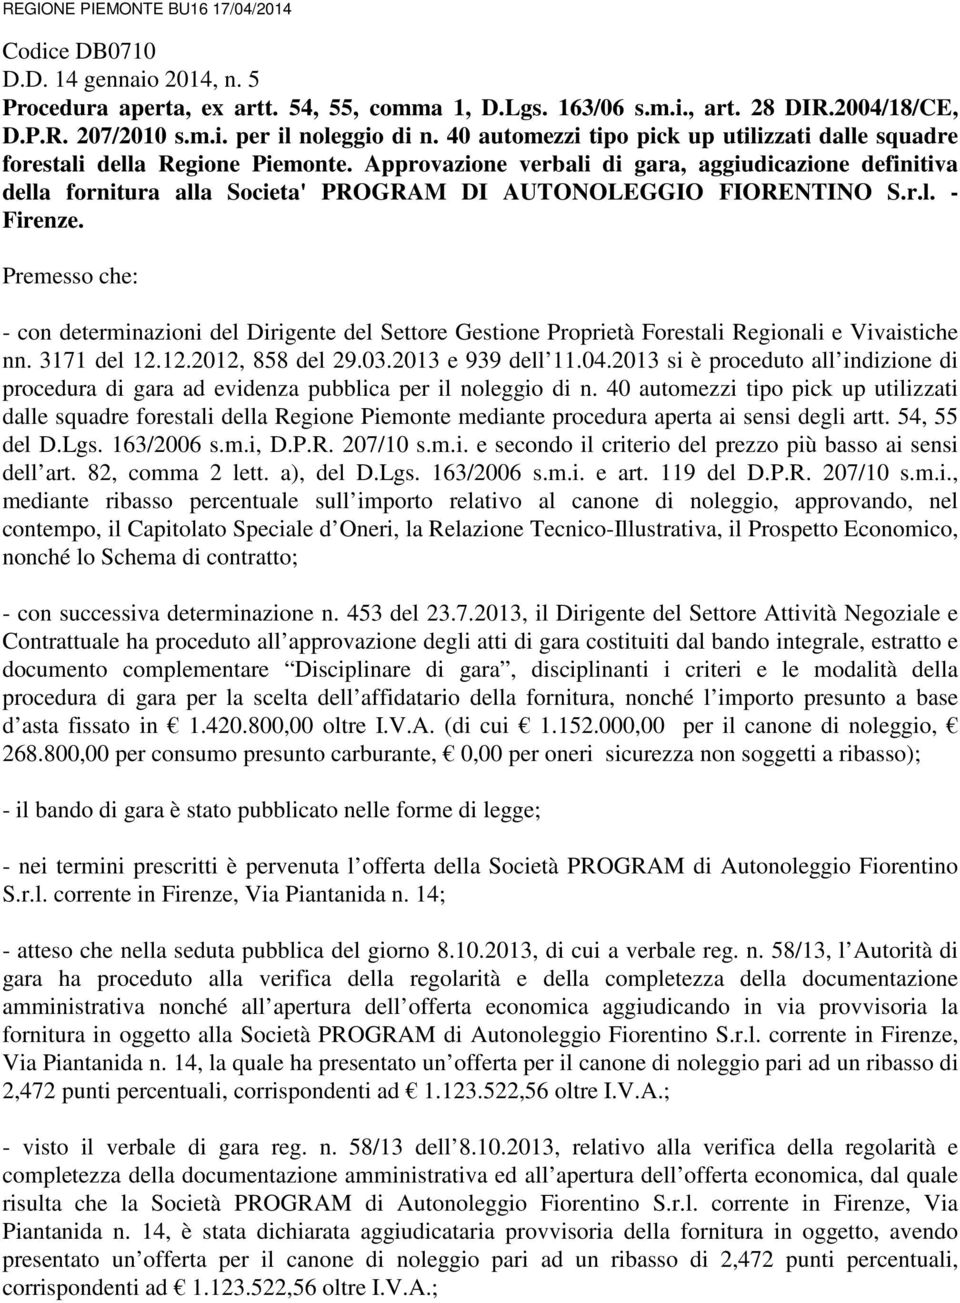 Approvazione verbali di gara, aggiudicazione definitiva della fornitura alla Societa' PROGRAM DI AUTONOLEGGIO FIORENTINO S.r.l. - Firenze.